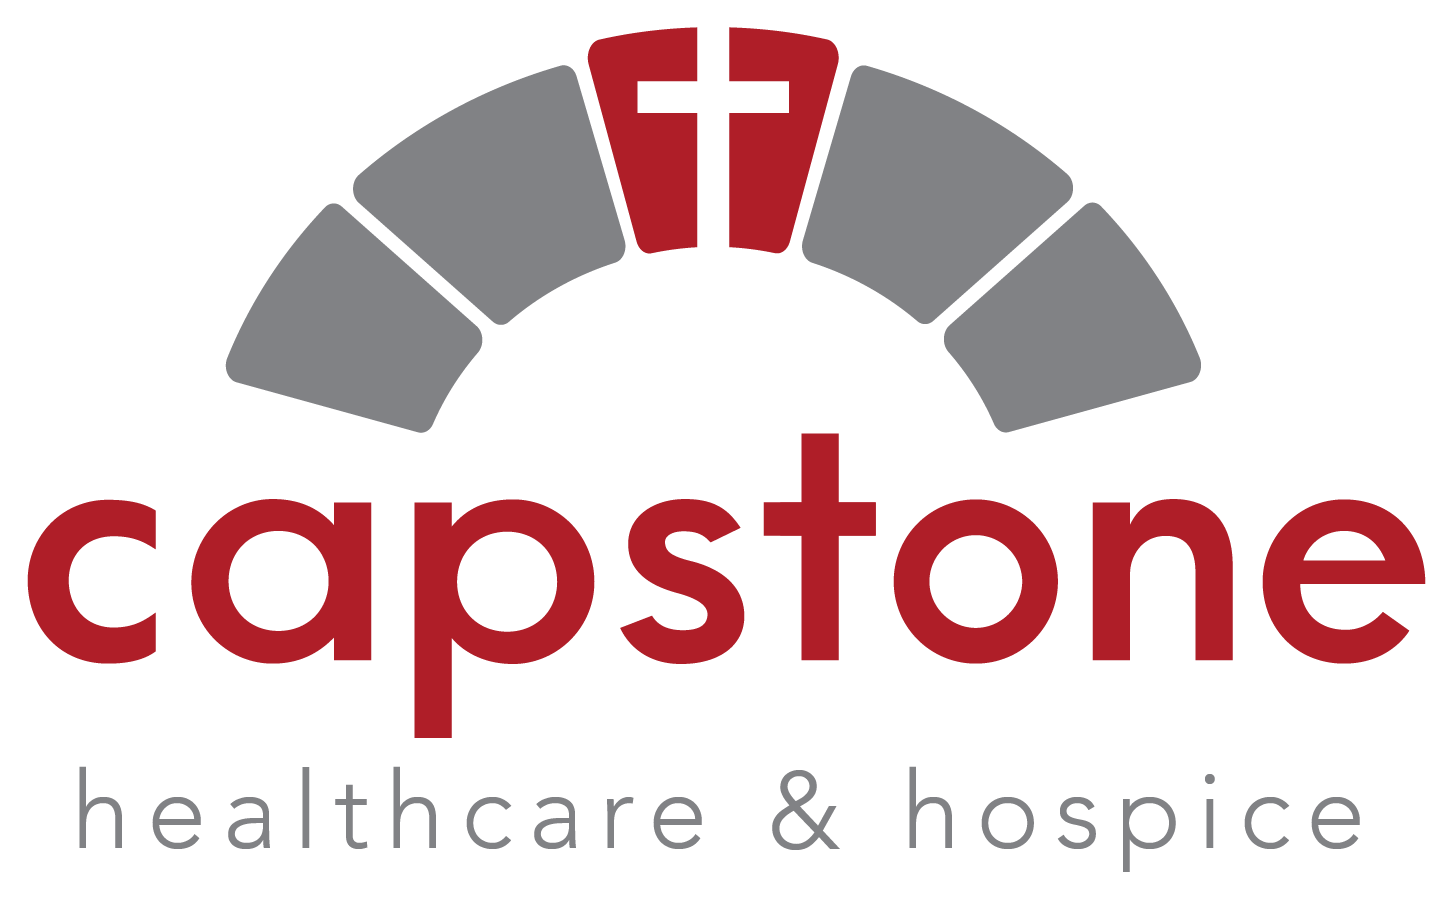 Capstone Hospice